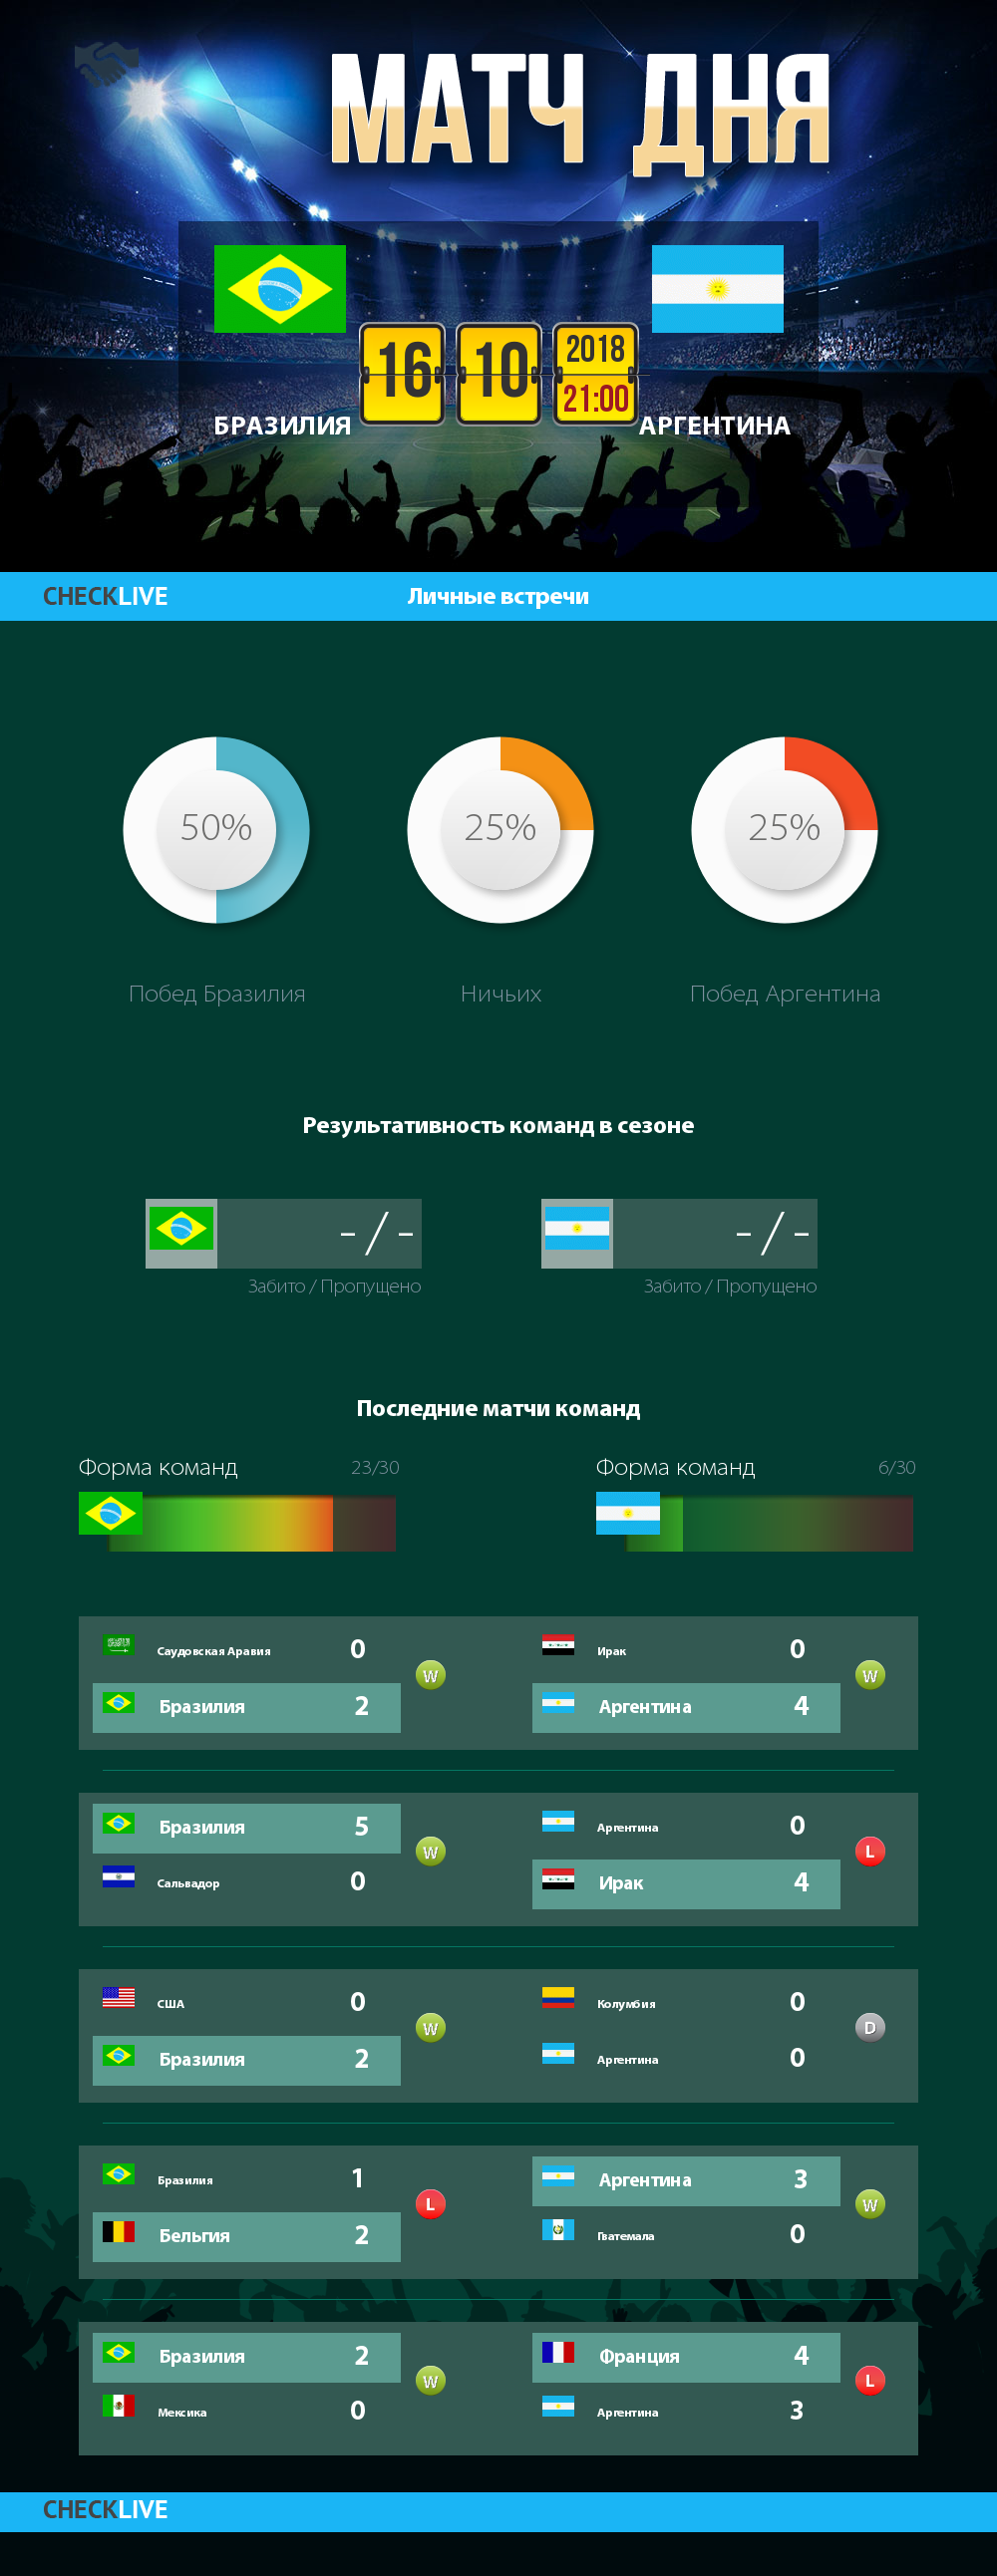 Инфографика Бразилия и Аргентина матч дня 16.10.2018